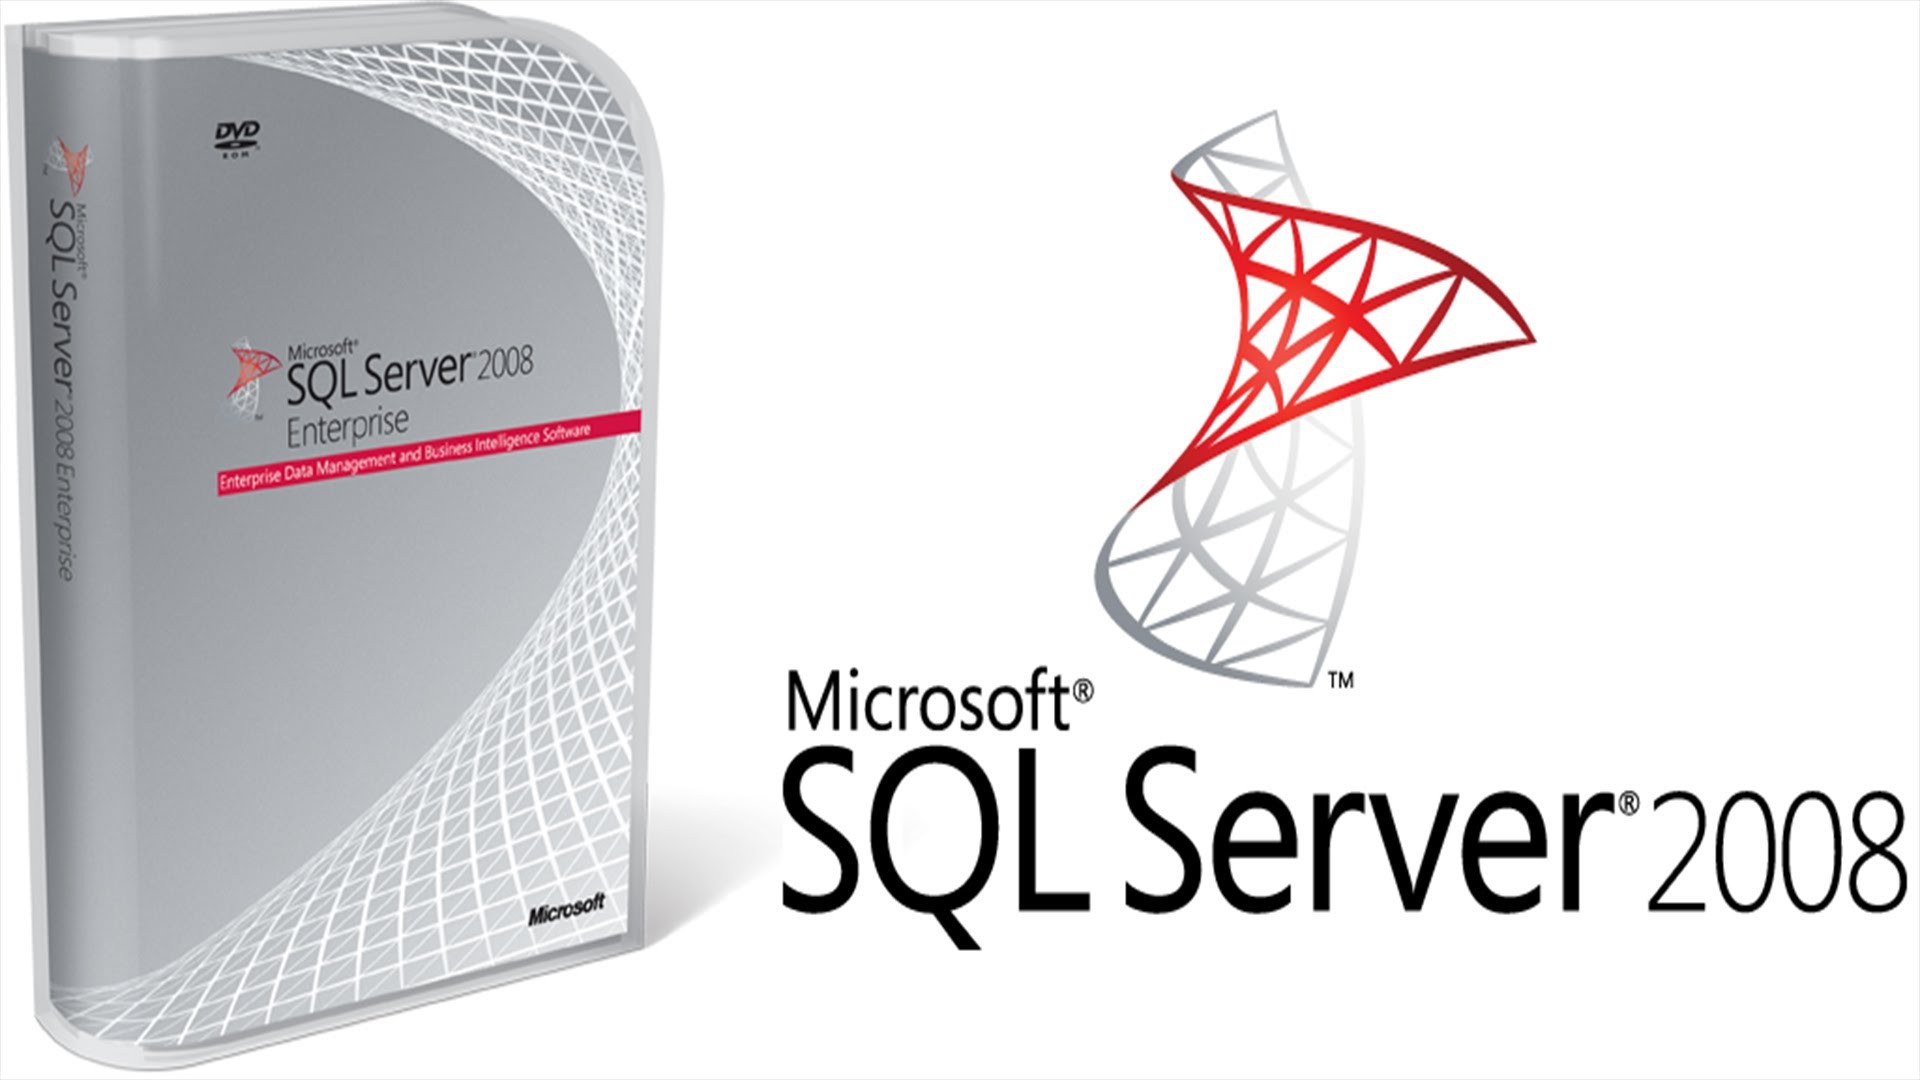 Hướng dẫn cài đặt đơn giản SQL Server 2008 R2